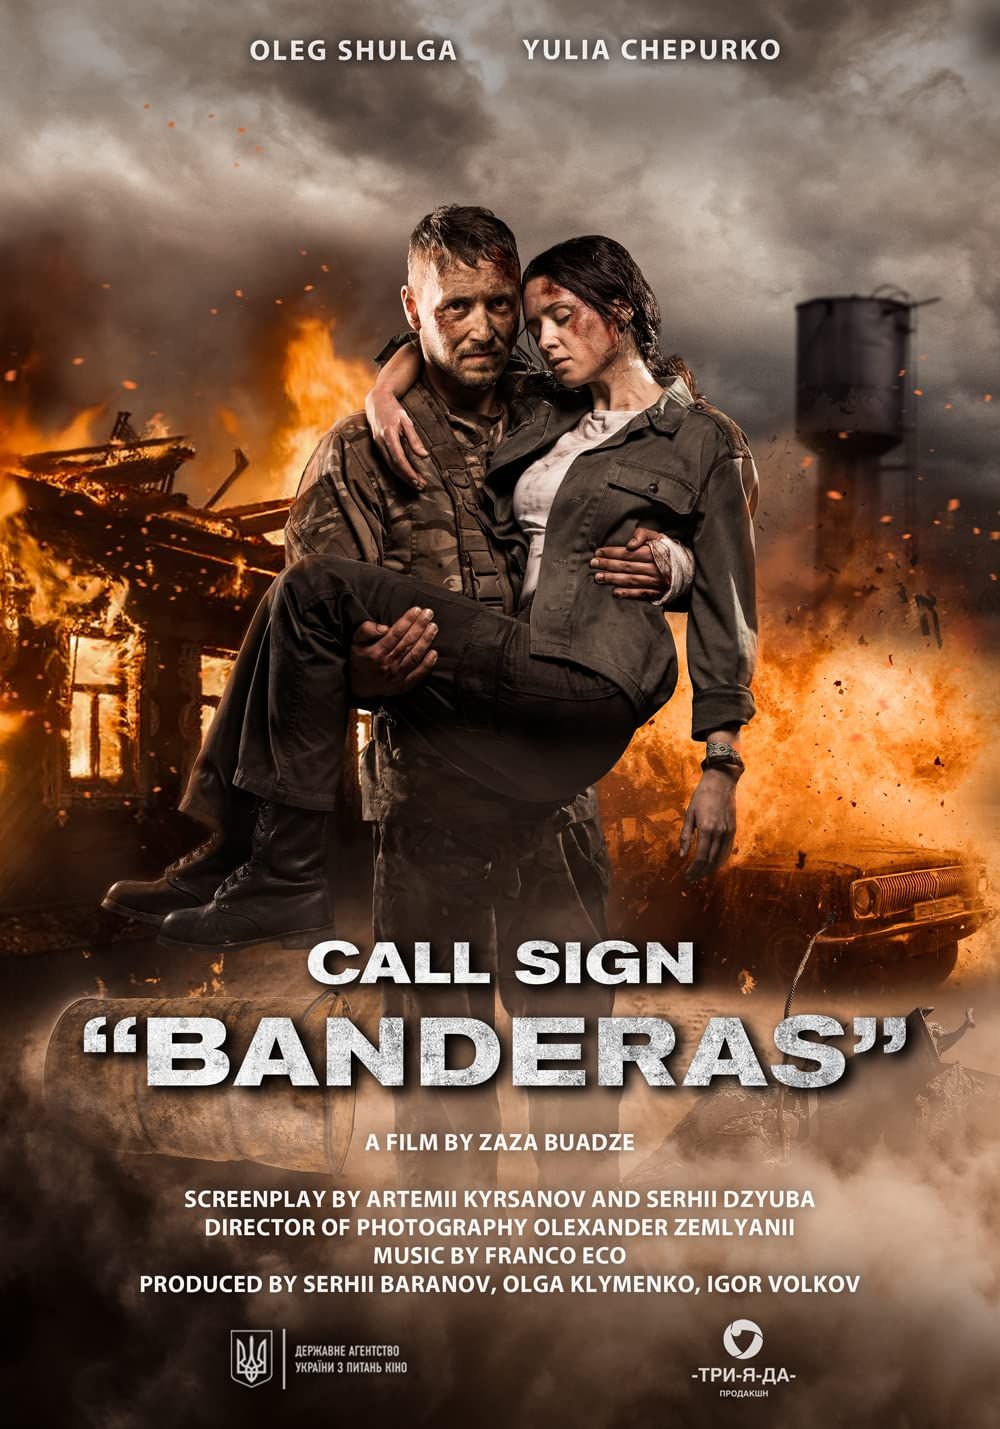 Call Sign Banderas (2018) Hindi Dubbed HDRip download full movie